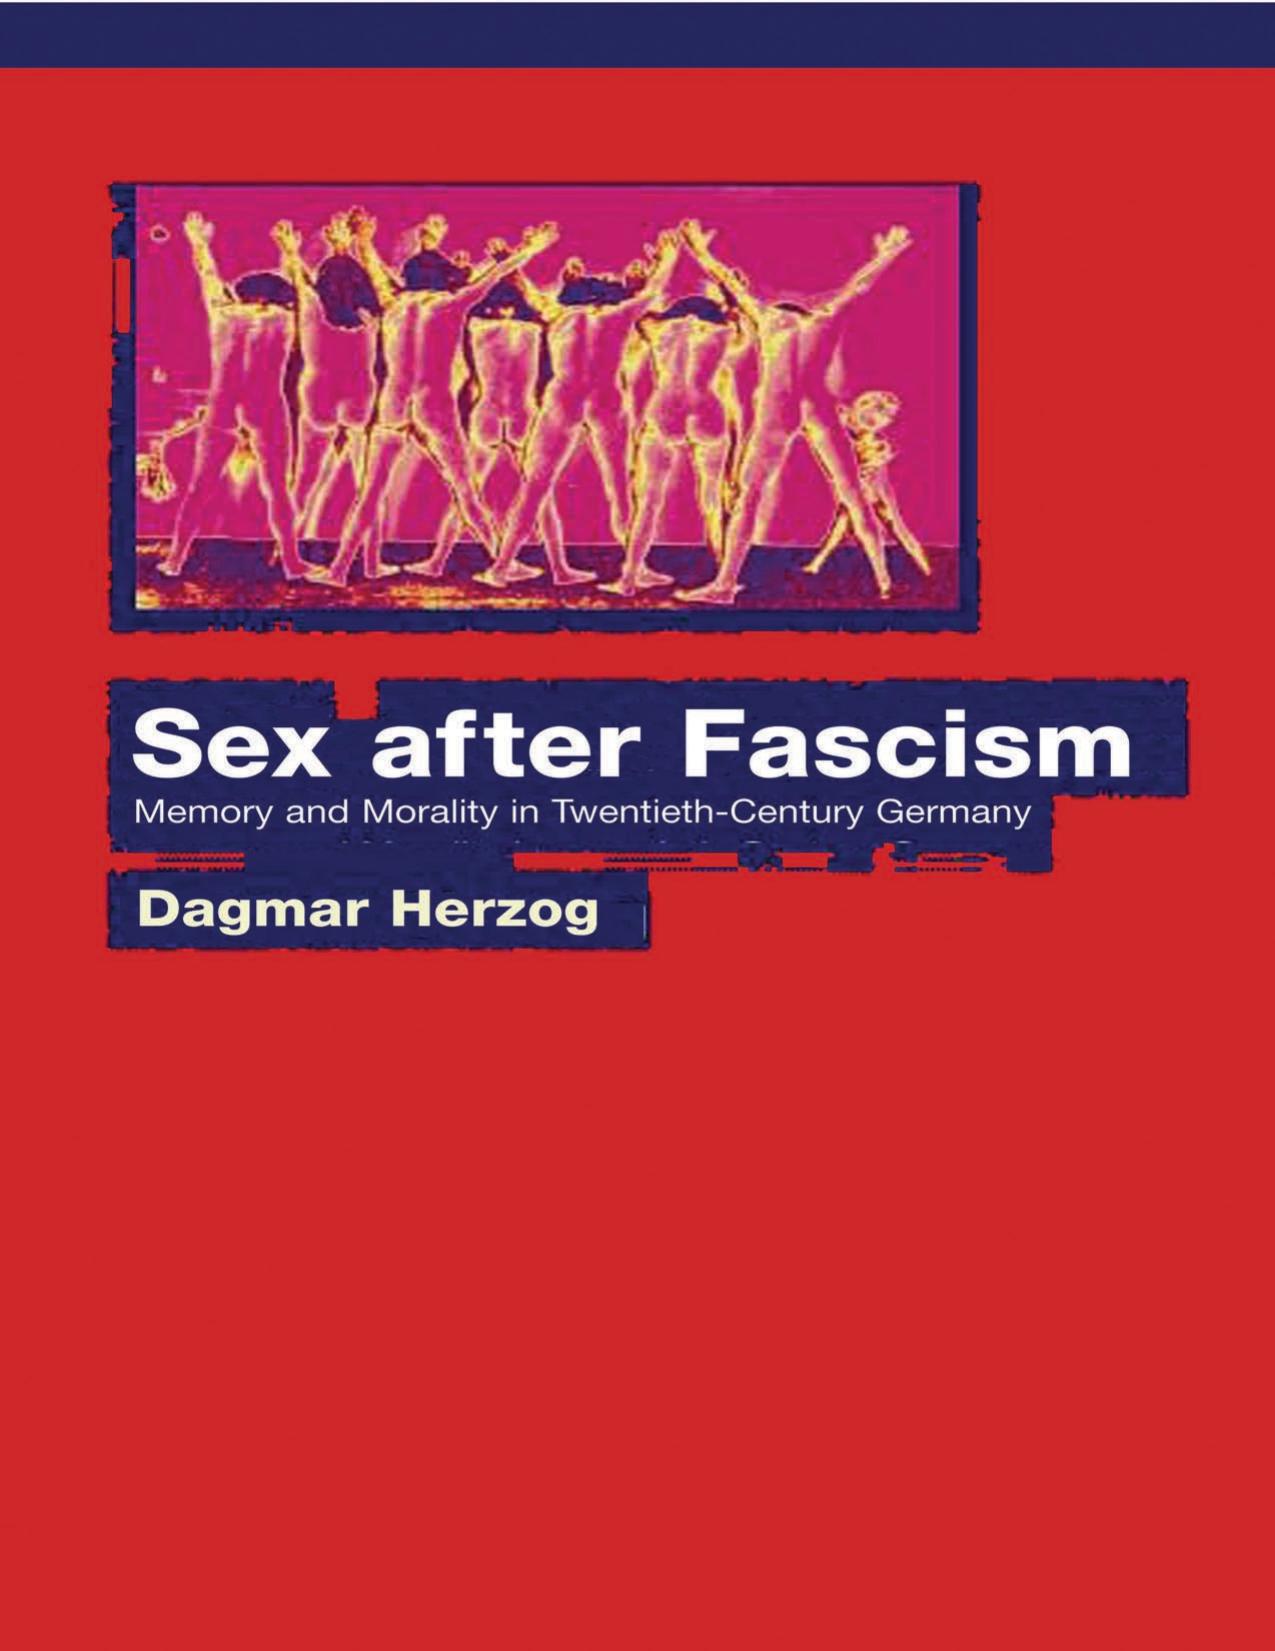 Sex after Fascism by Dagmar Herzog